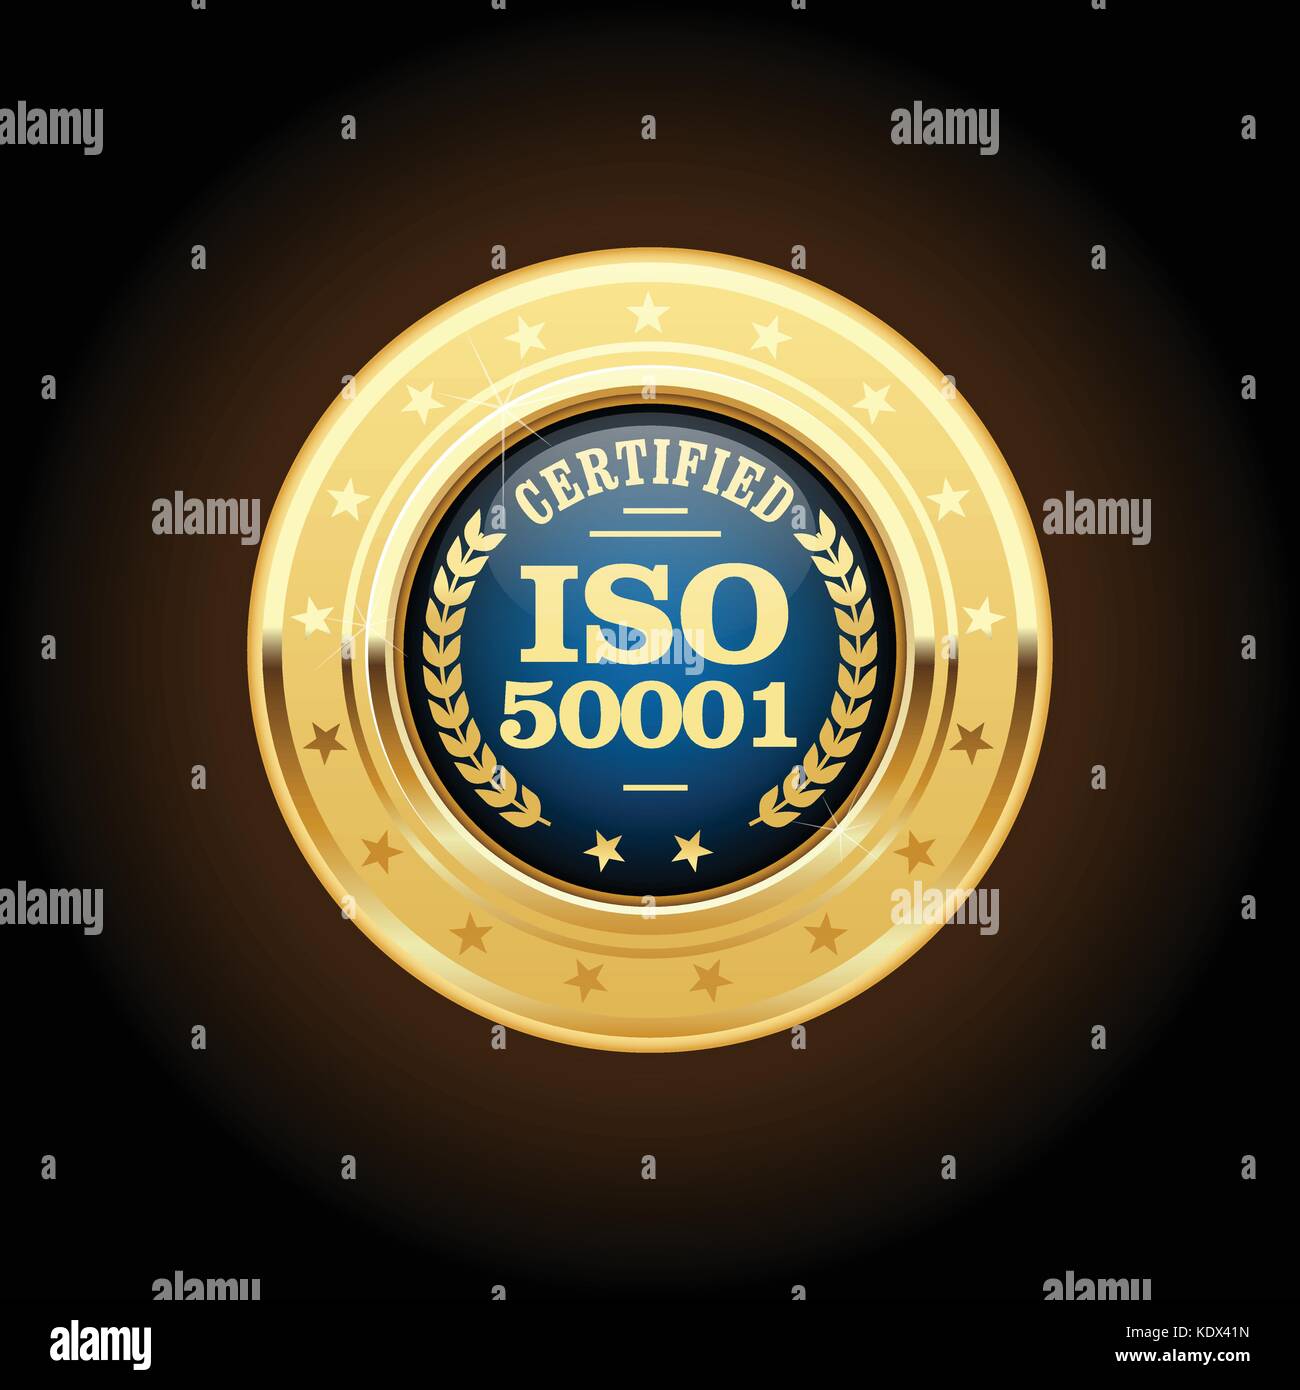 Iso 50001 Standard Medaille - Energy Management Stock Vektor